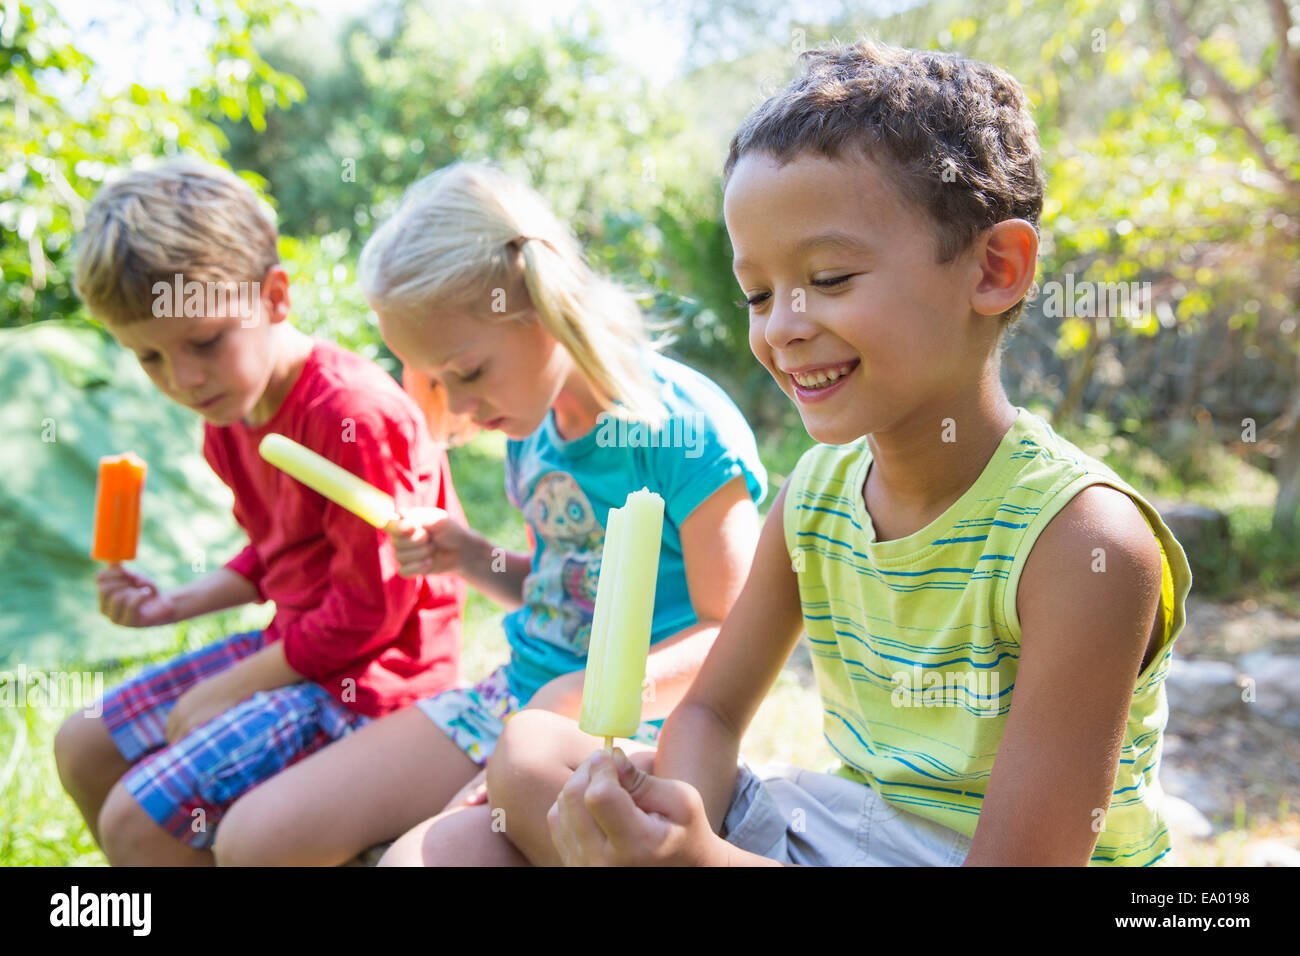 Trois enfants en jardin eating ice lollies Banque D'Images